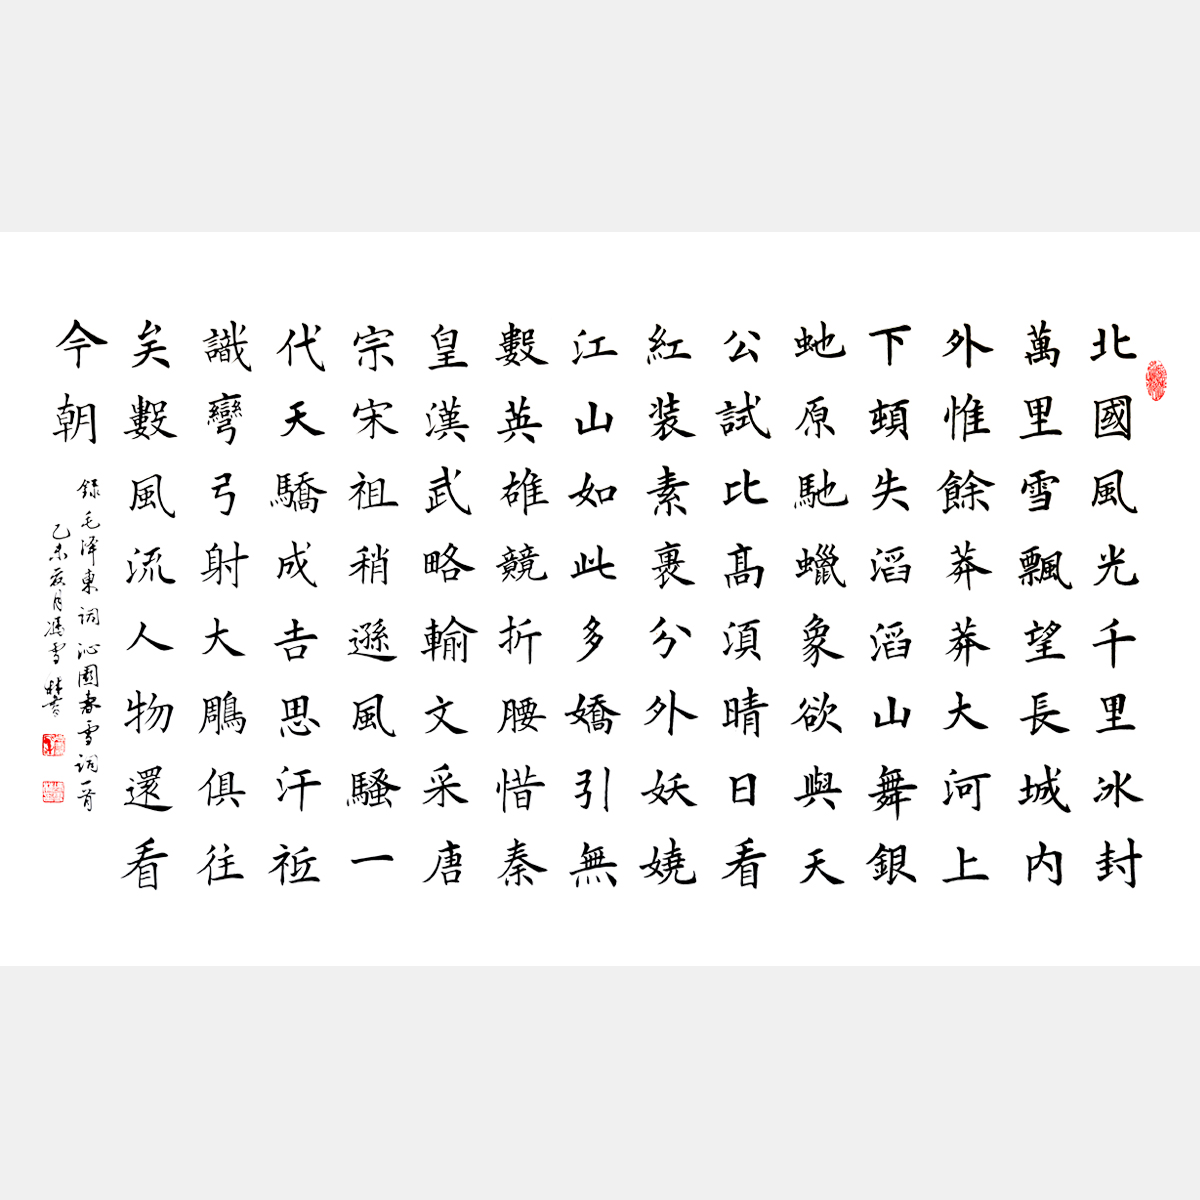 毛泽东词《沁园春·雪》北国风光 “中国有词以来第一手” 楷书书法作品